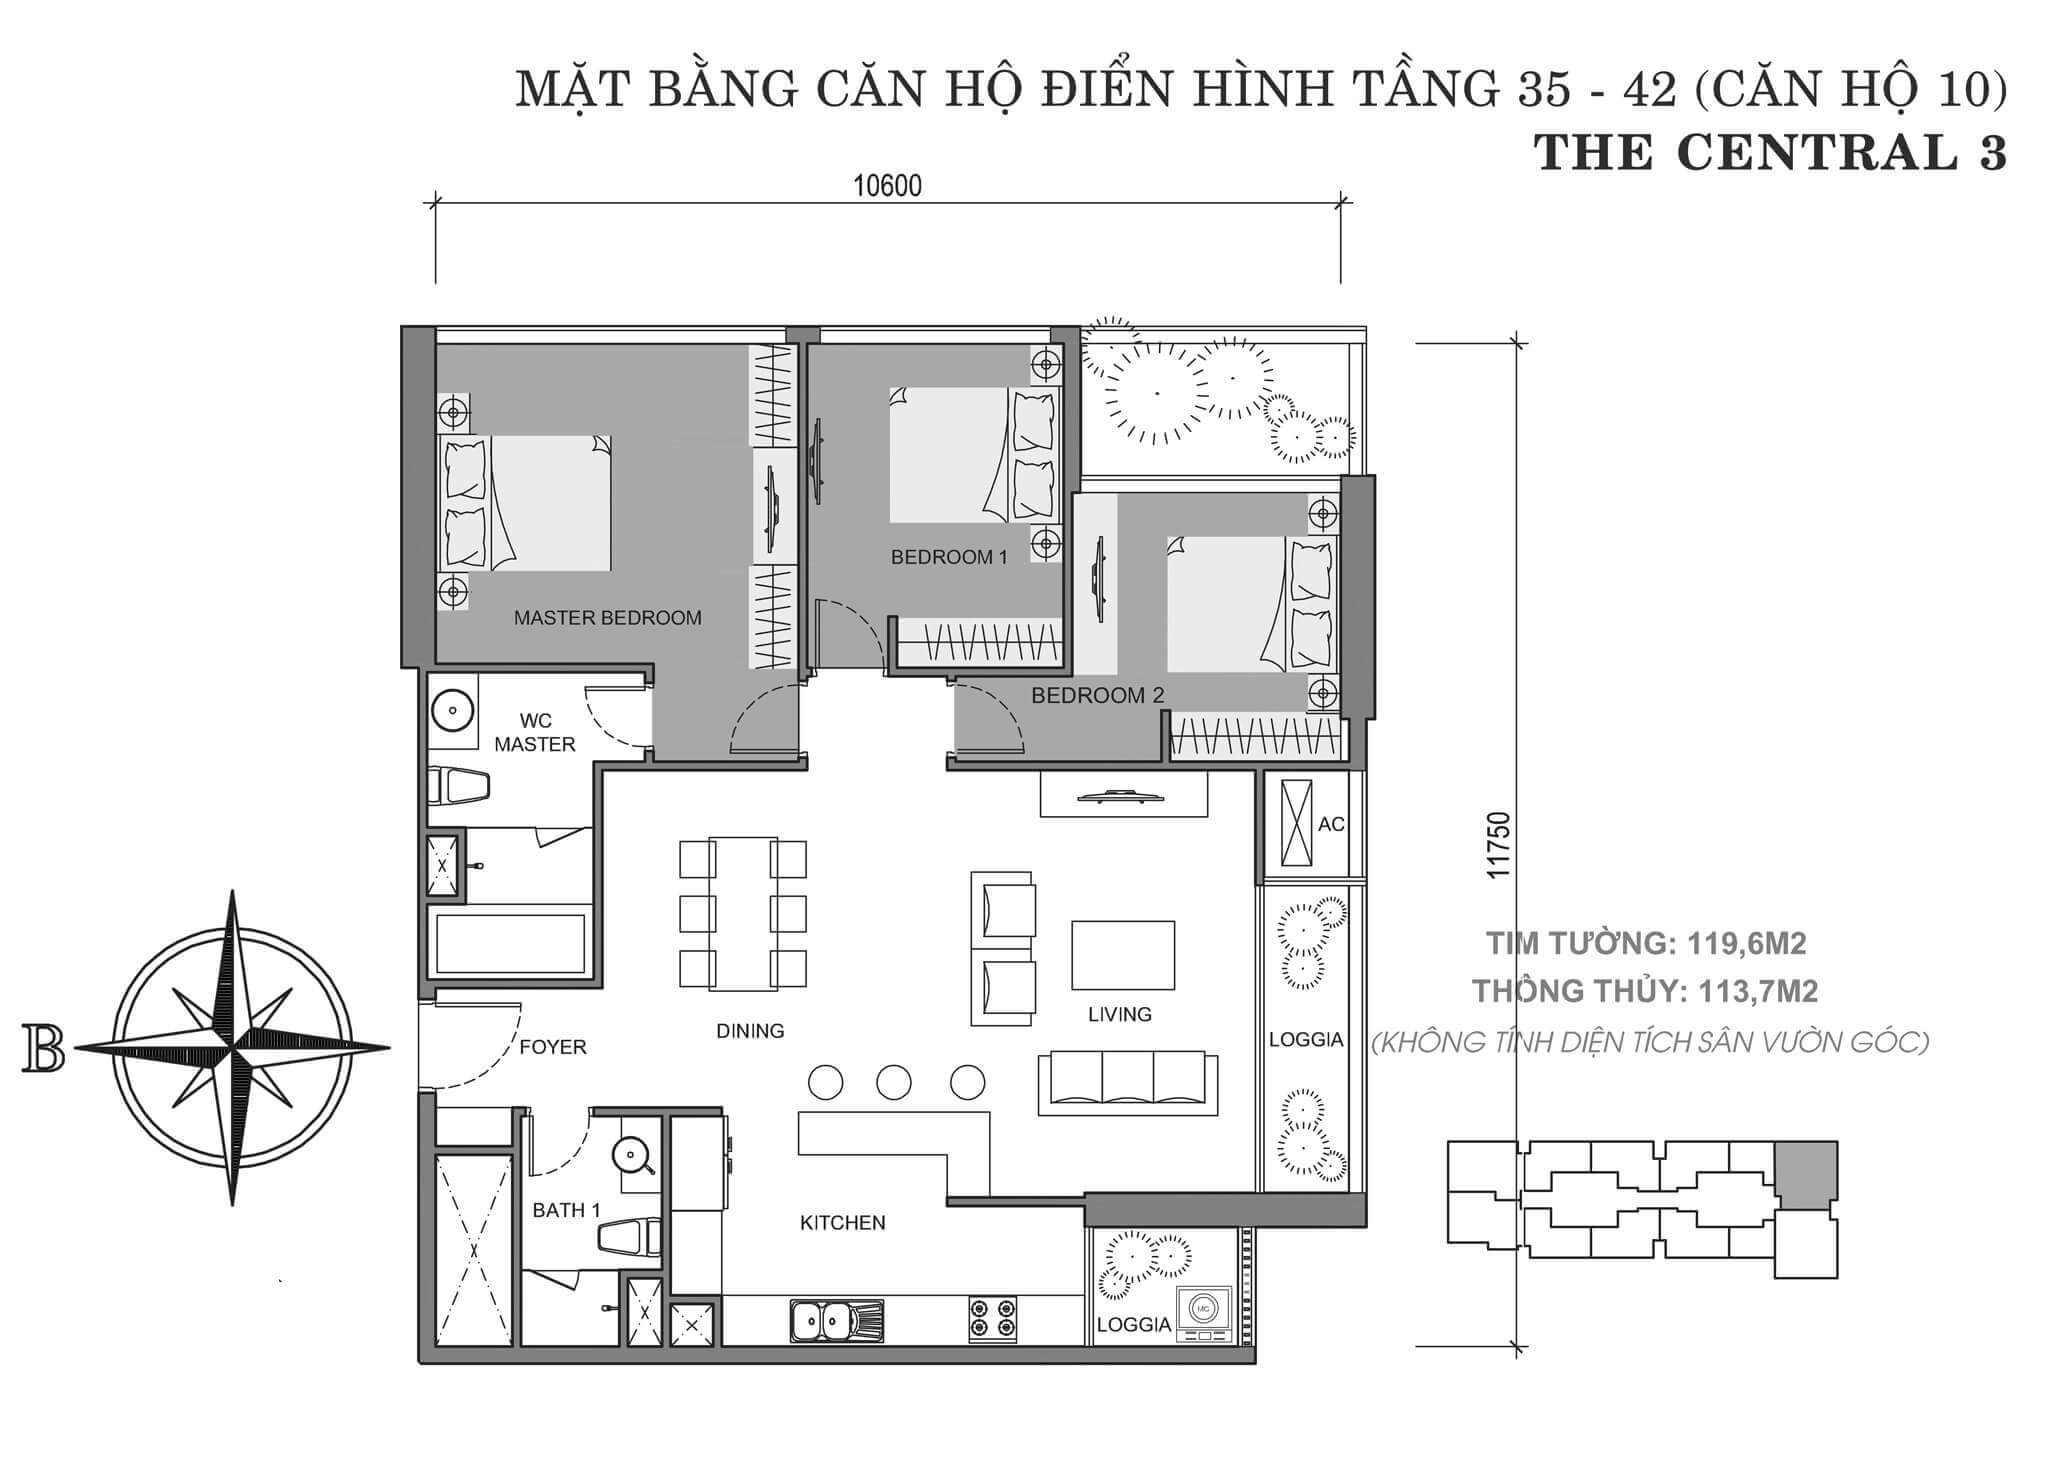 layout căn hộ số 10 tòa Central 3 tầng 35-42